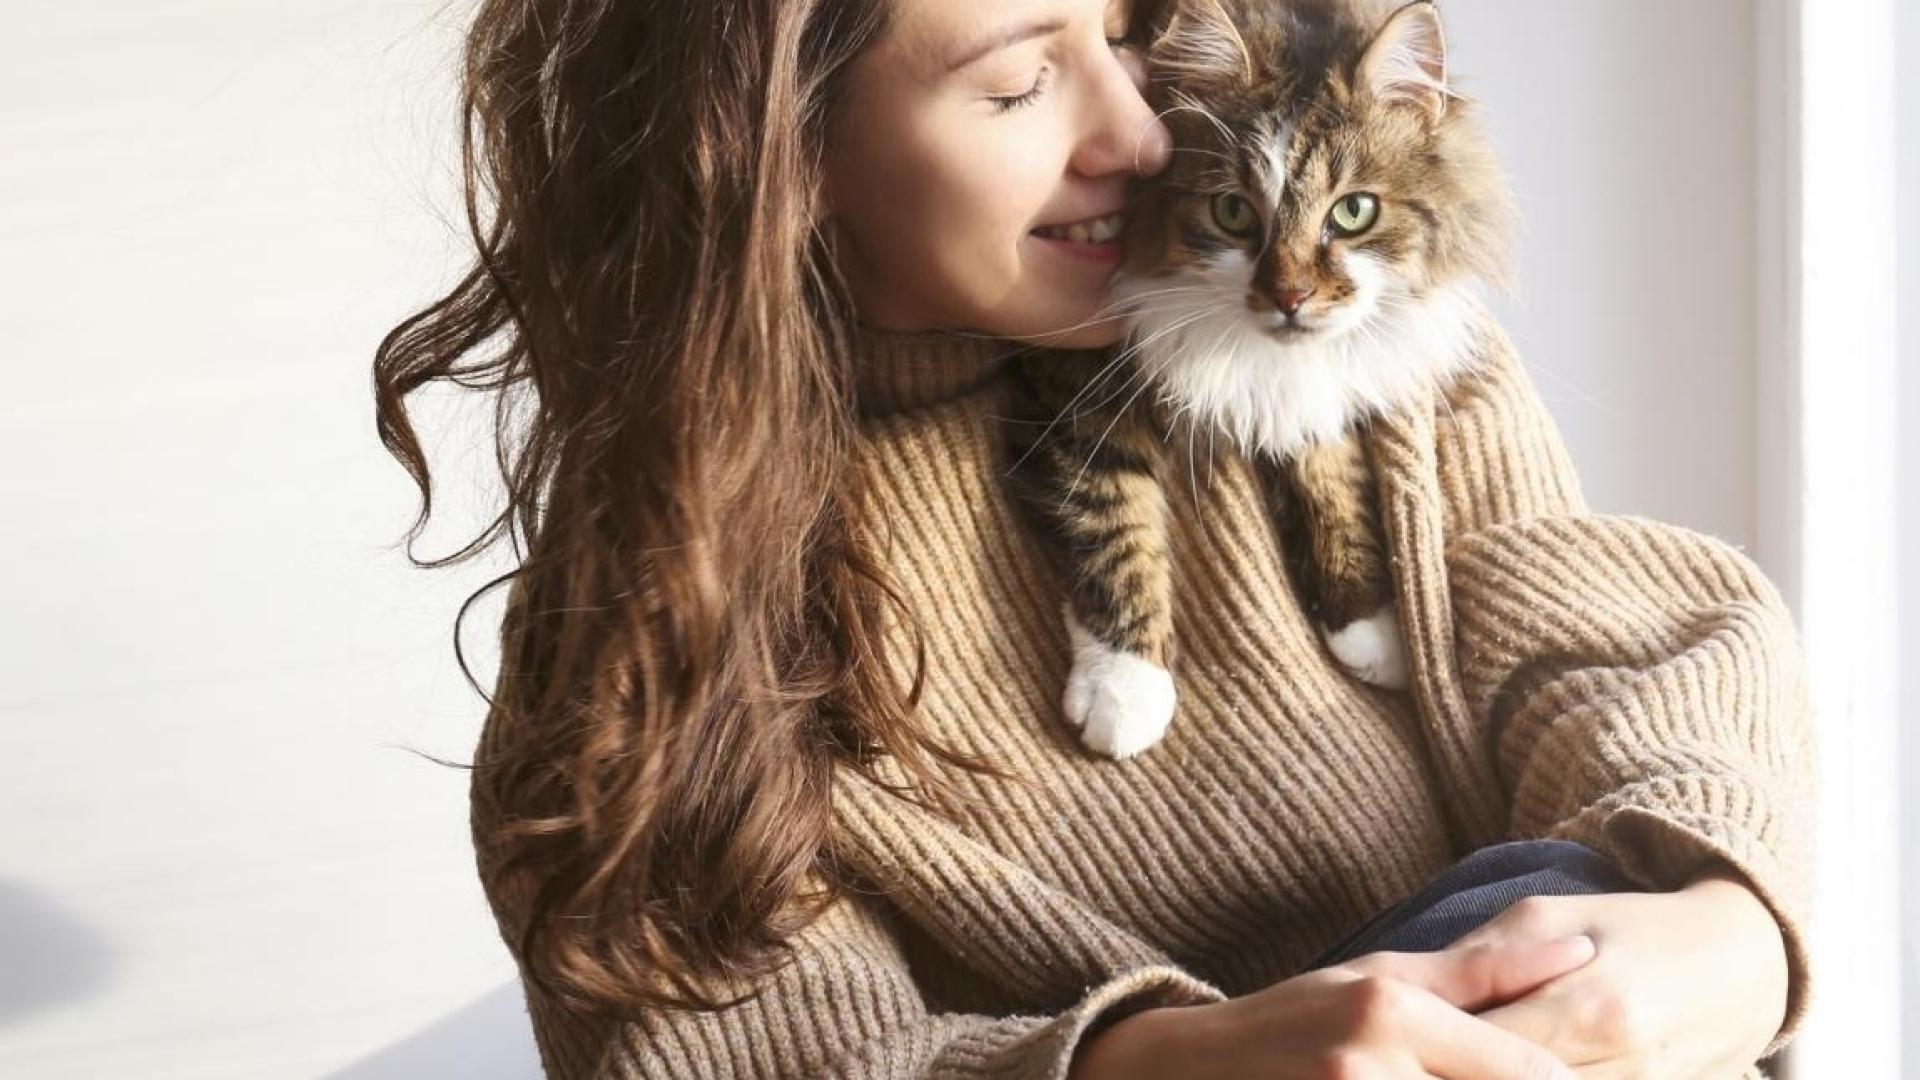 Auf der Schulter einer jungen Frau sitzt eine getiegerte Katze.